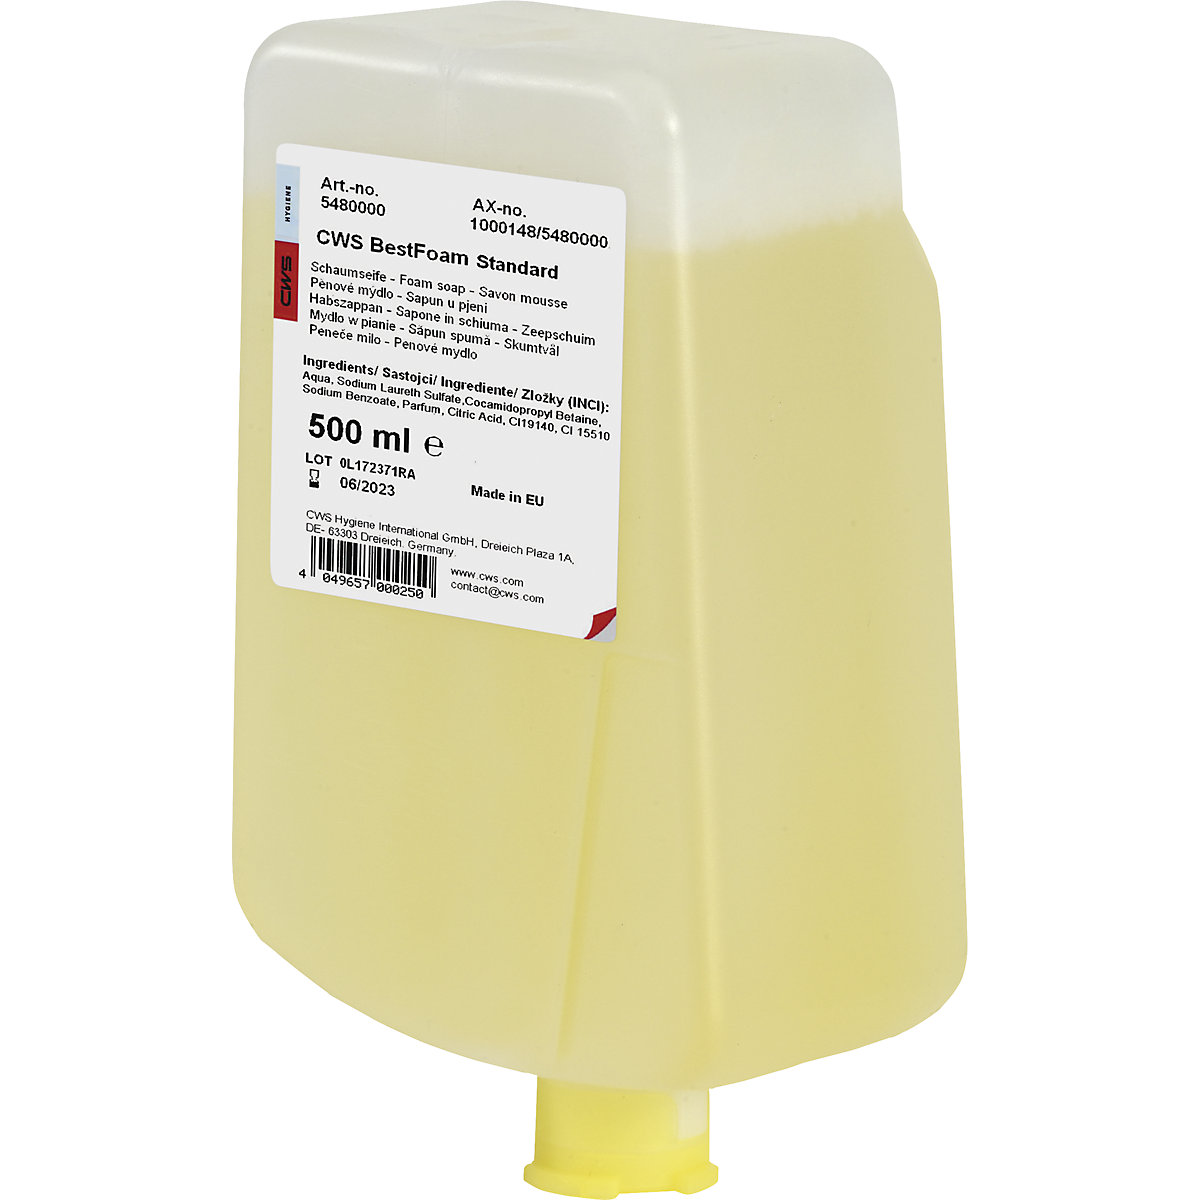 Pjenasti sapun Best Foam, nije štetan za kožu – CWS, pak. 12 boca s po 0,5 l, standardan proizvod, u žutoj boji-2